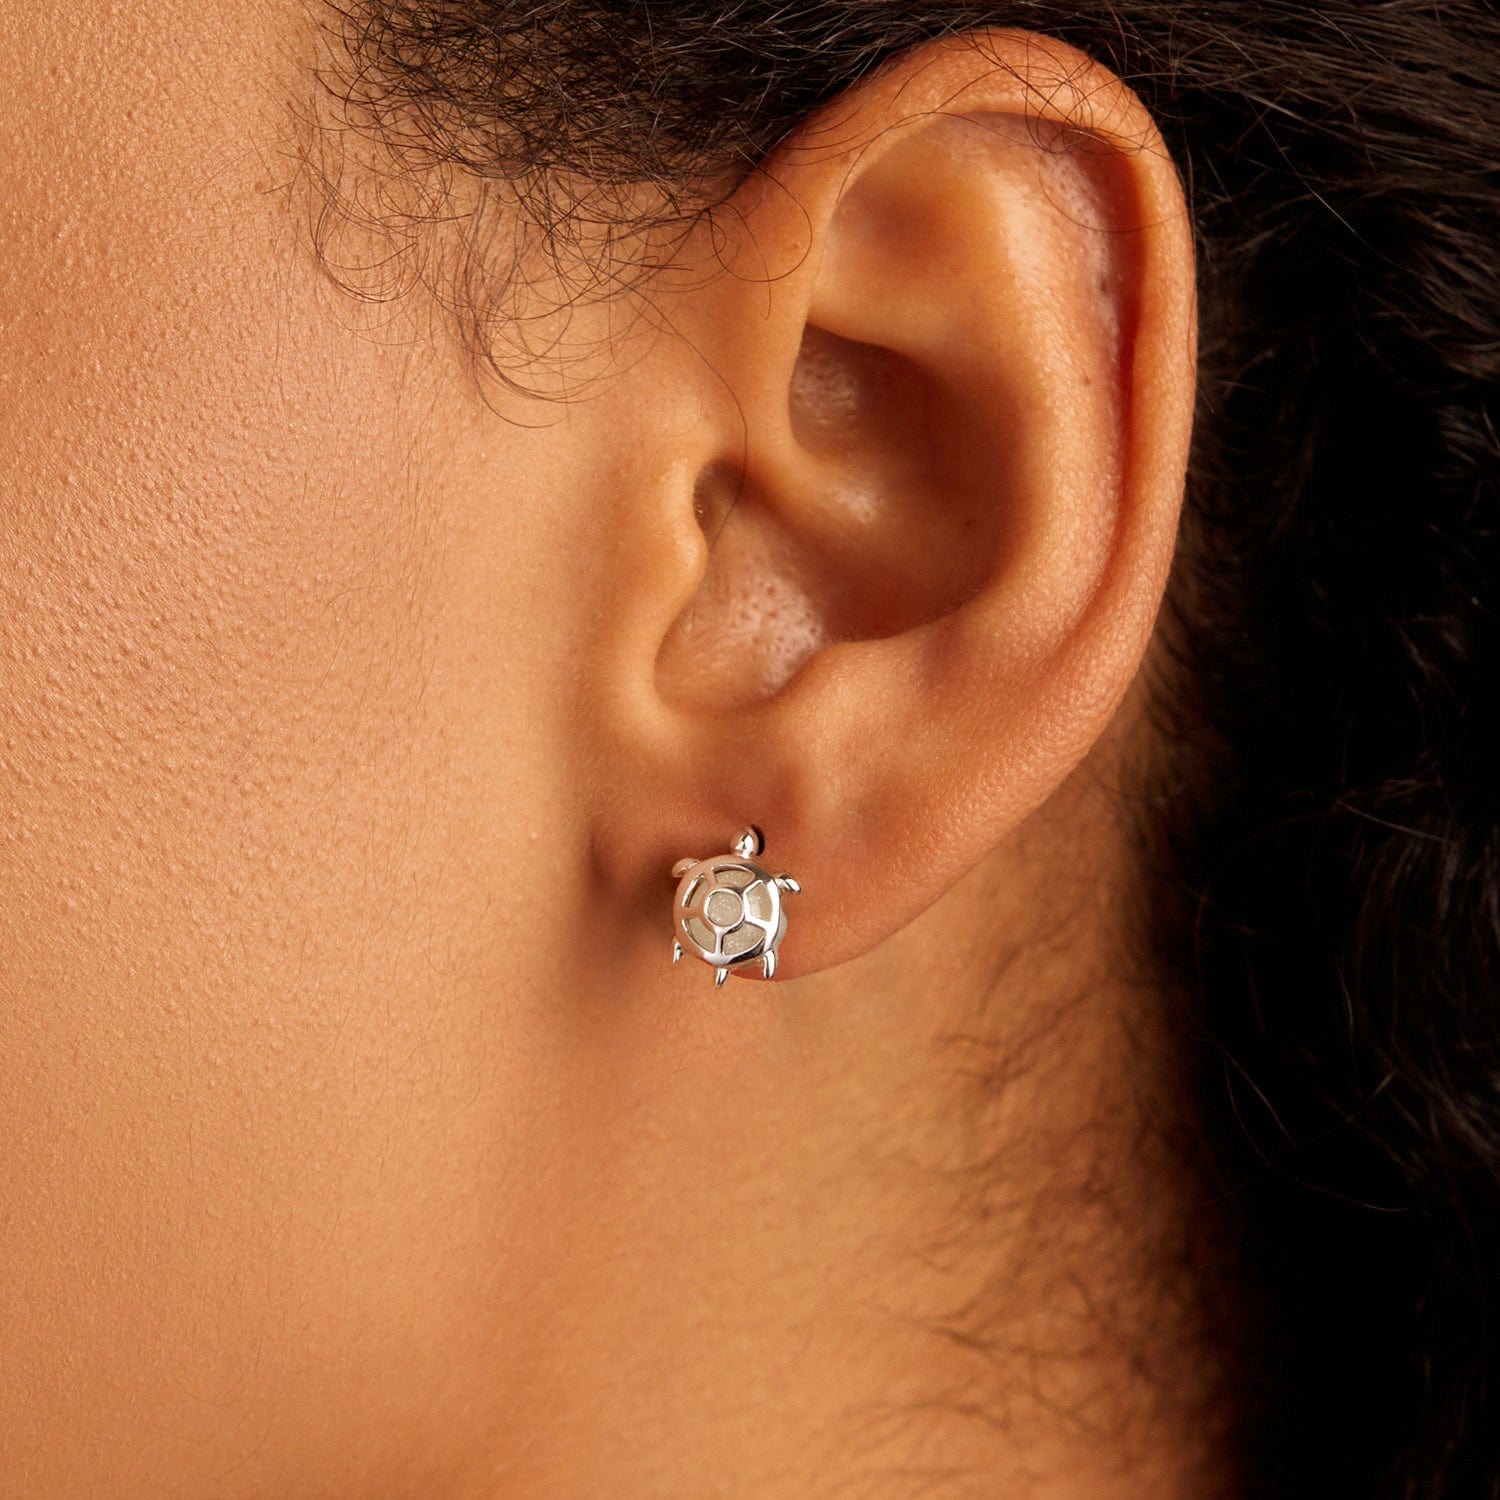 jewelaus Earrings Sea Turtle Earrings